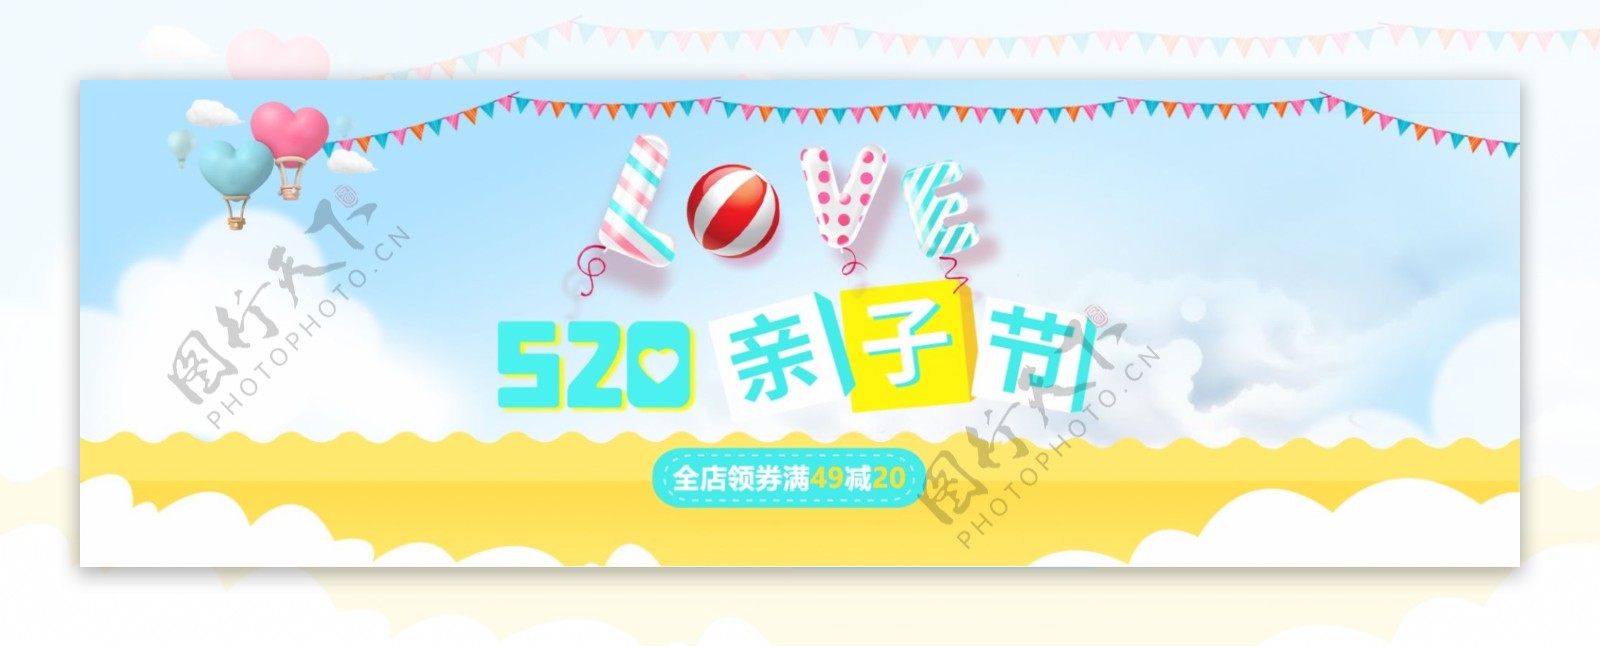 电商淘宝520亲子节促销活动海报